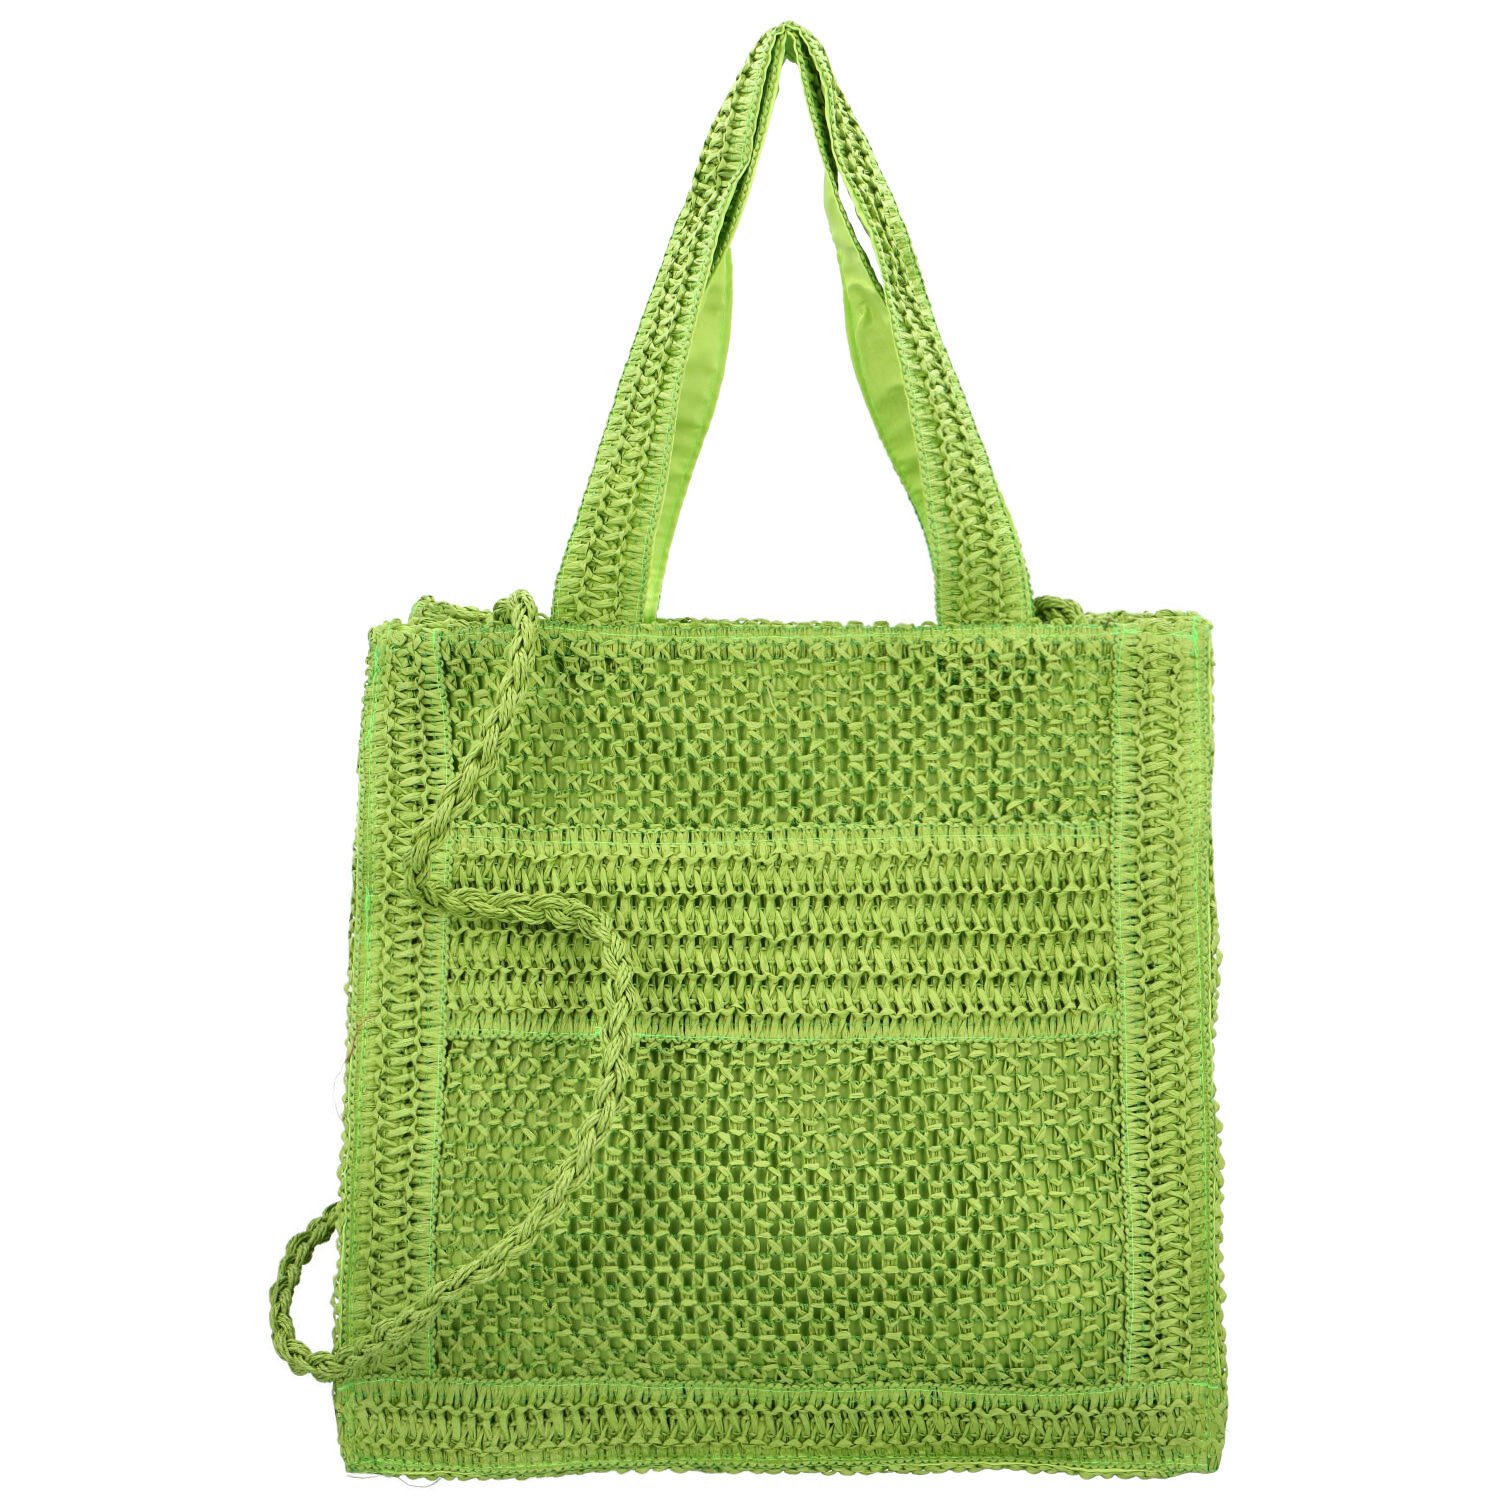 Dámská kabelka na rameno zelená - Firenze Minja